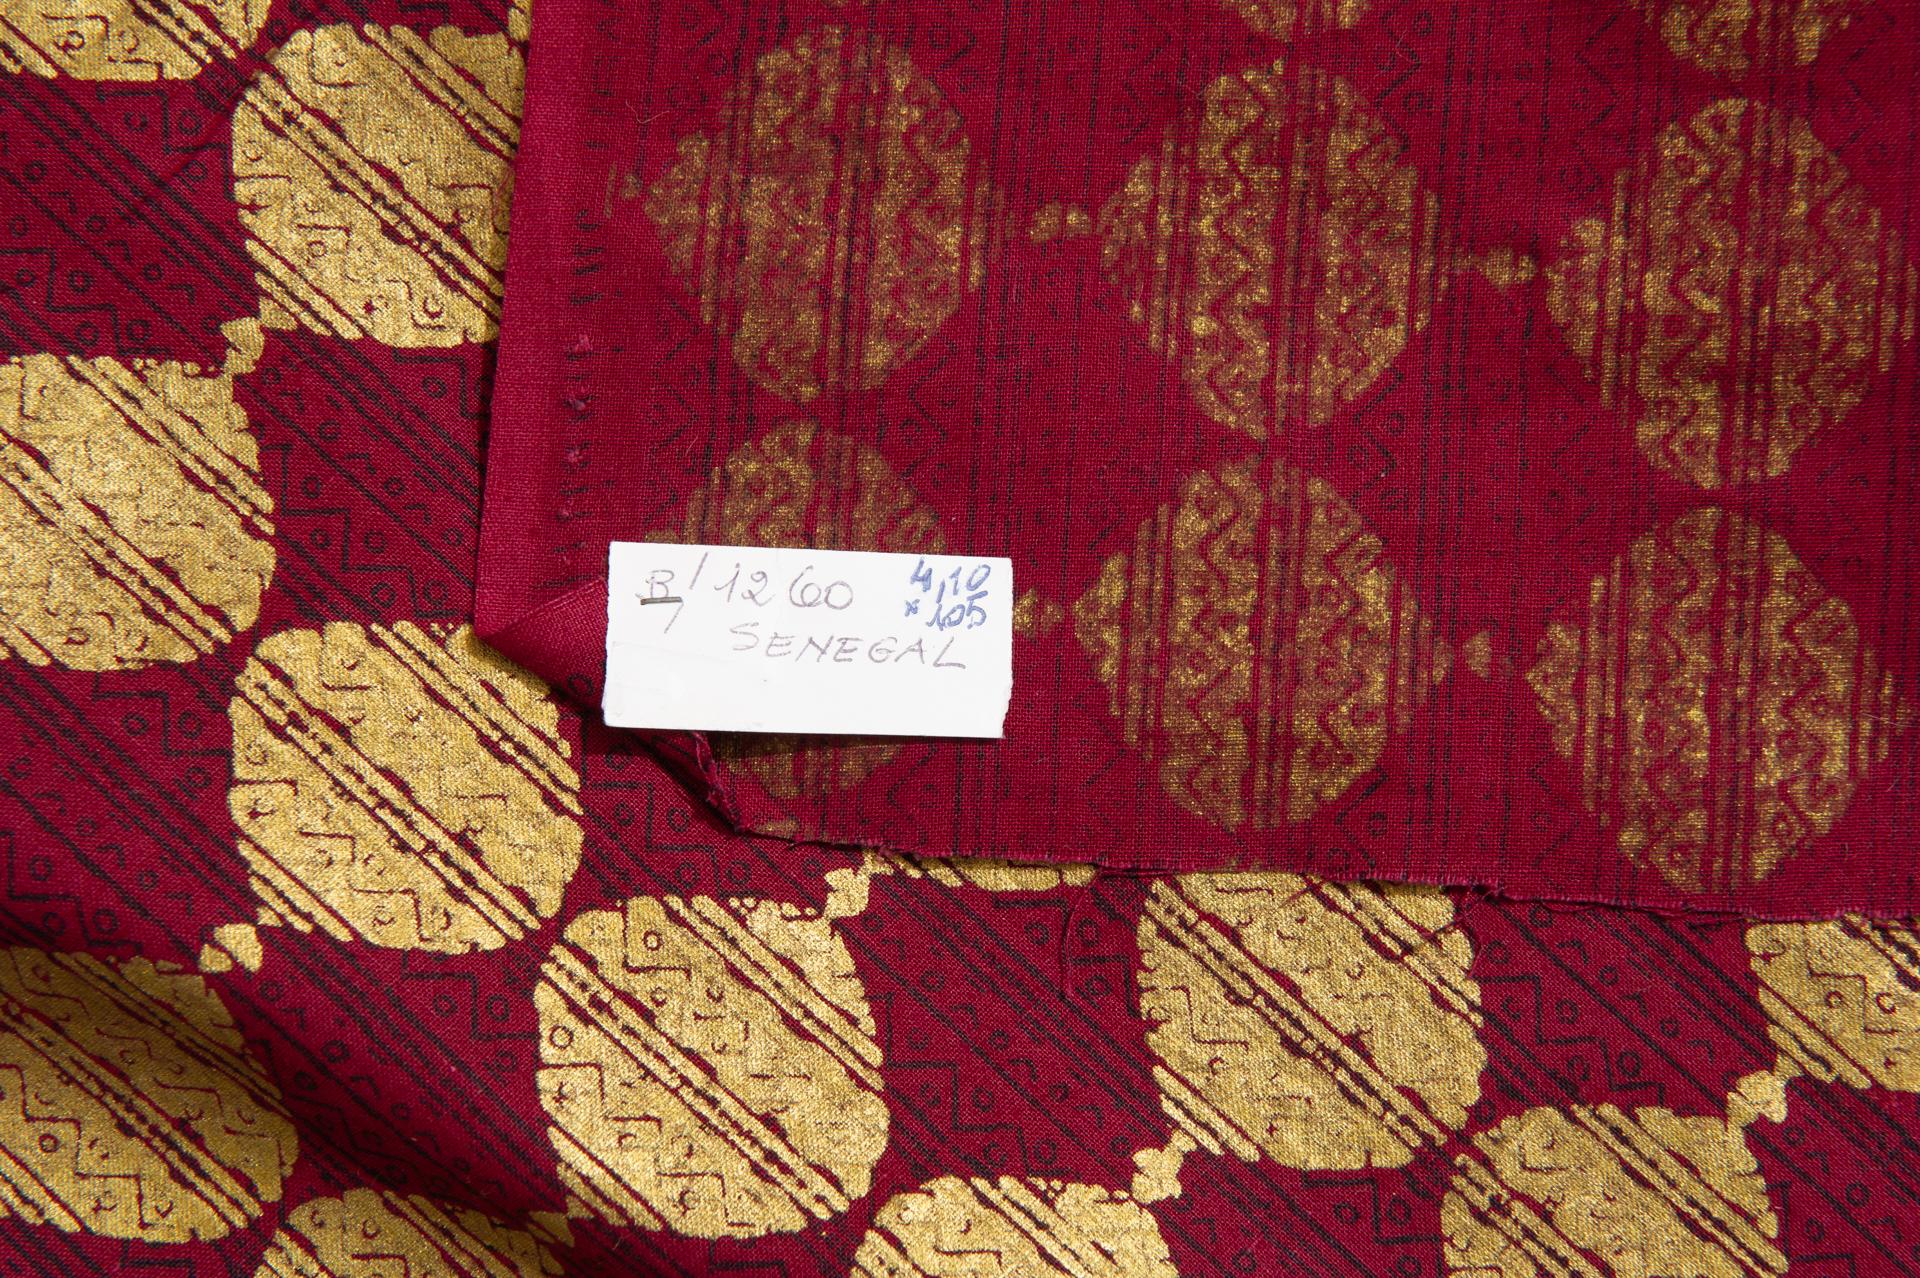 Ungewöhnliches, interessantes, elegantes, handbedrucktes Gewebe aus dem Senegal: für einen Vorhang oder für ein schönes Kleid.
Es ist perfekt, neu, nie benutzt.